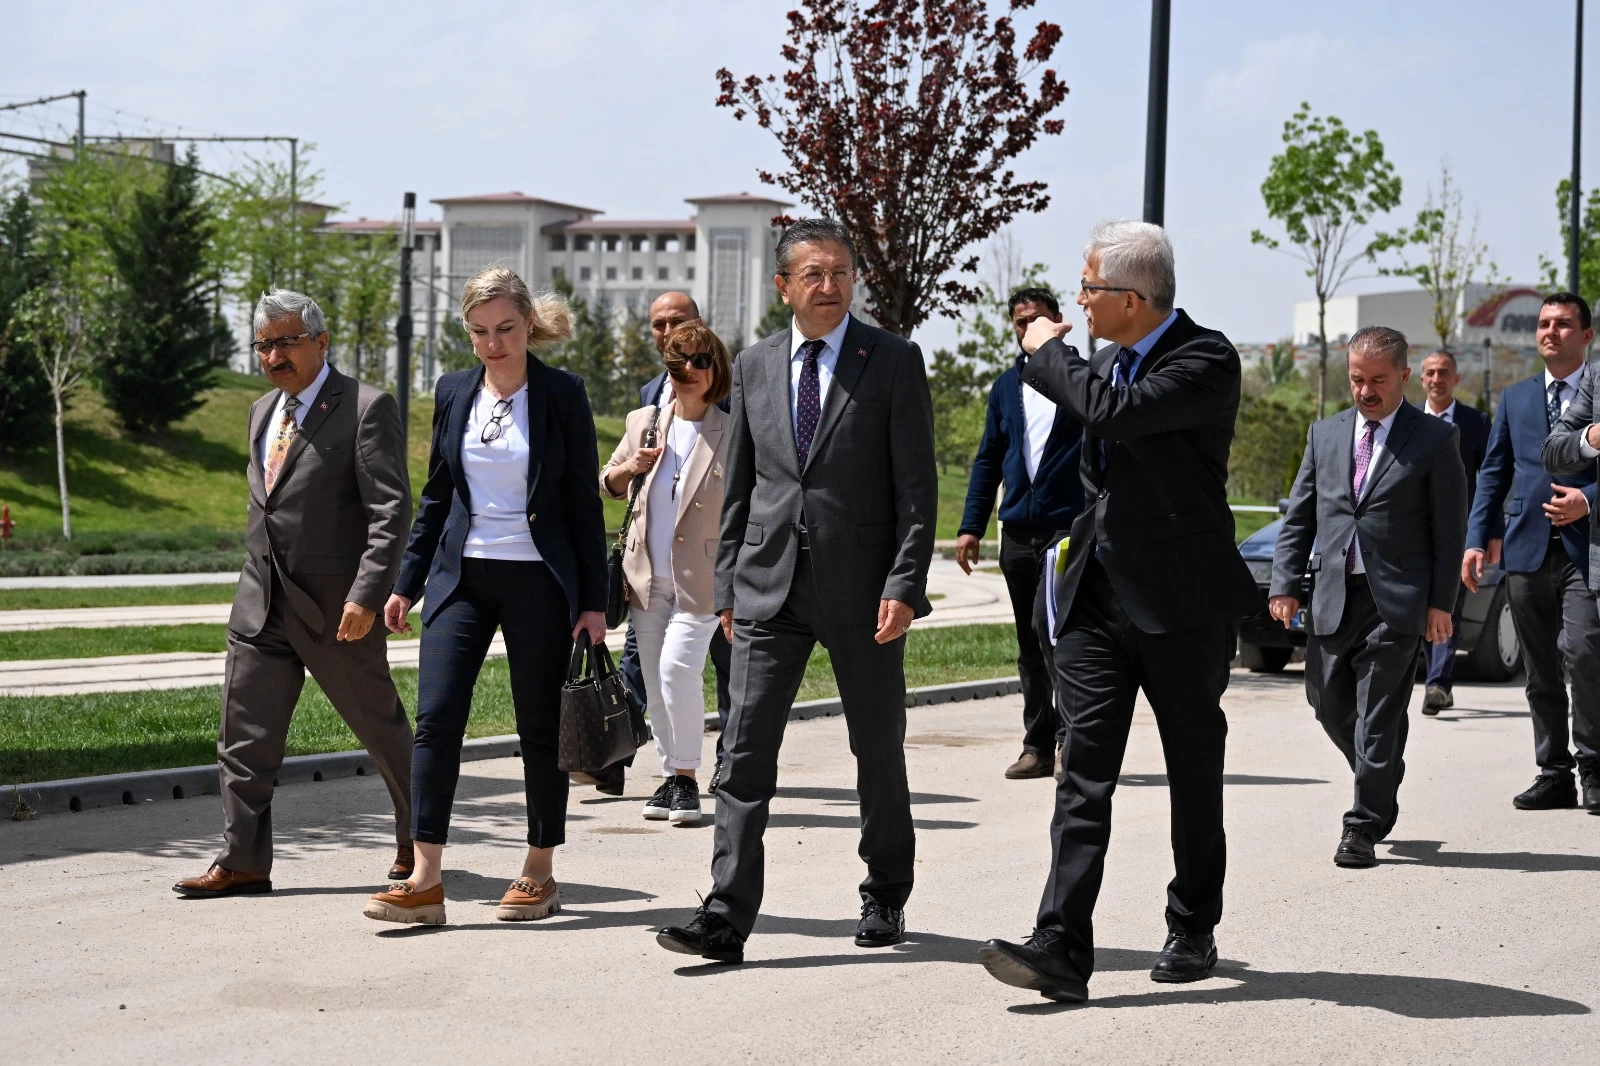 Altındağ Belediye Başkanı Veysel Tiryaki'nin inceleme çalışmalarında son durağı Millet Bahçesi oldu